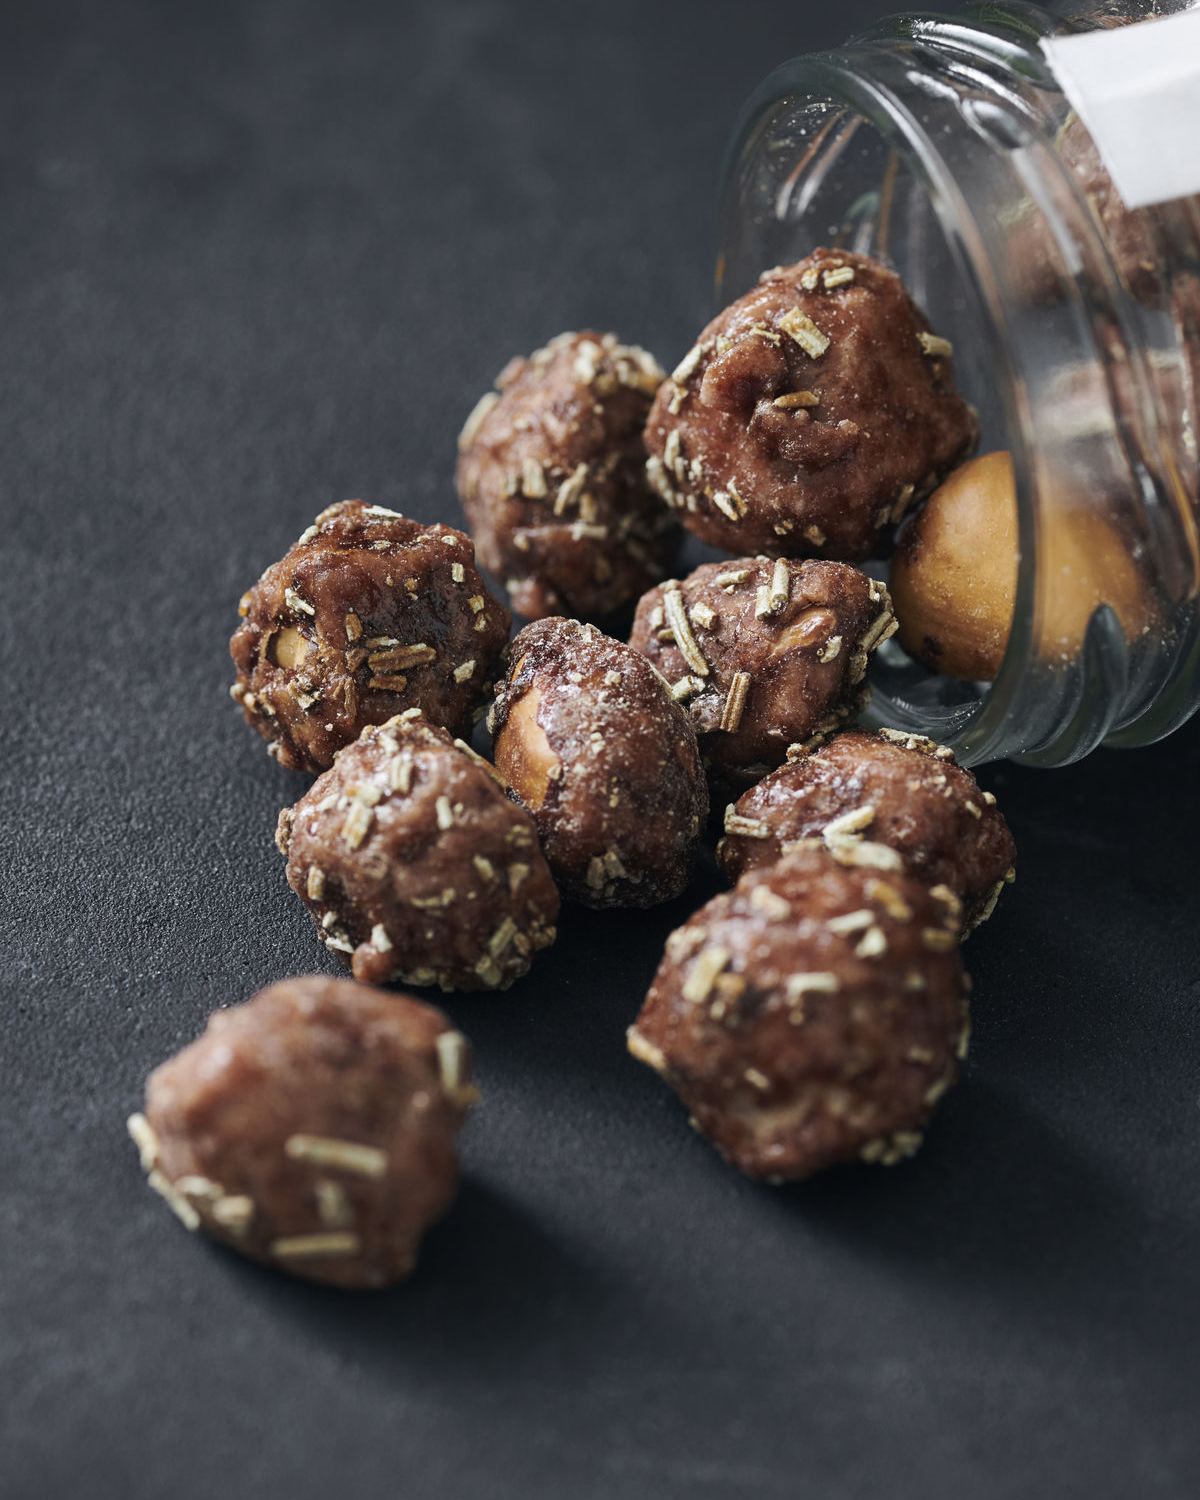 Caramelised hazelnuts, with rosemary, 70 g.